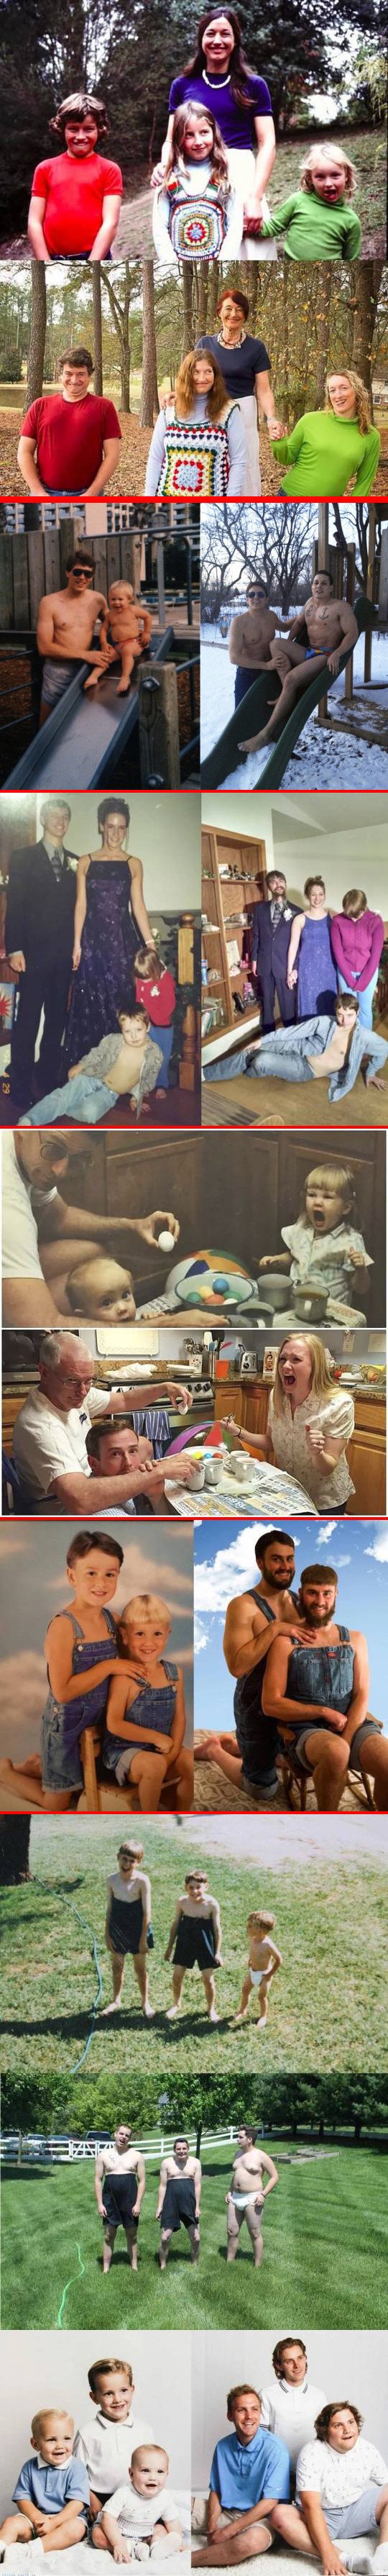 Meme_otros - La moda de recrear fotos antiguas en familia a veces da resultados muy perturbadores